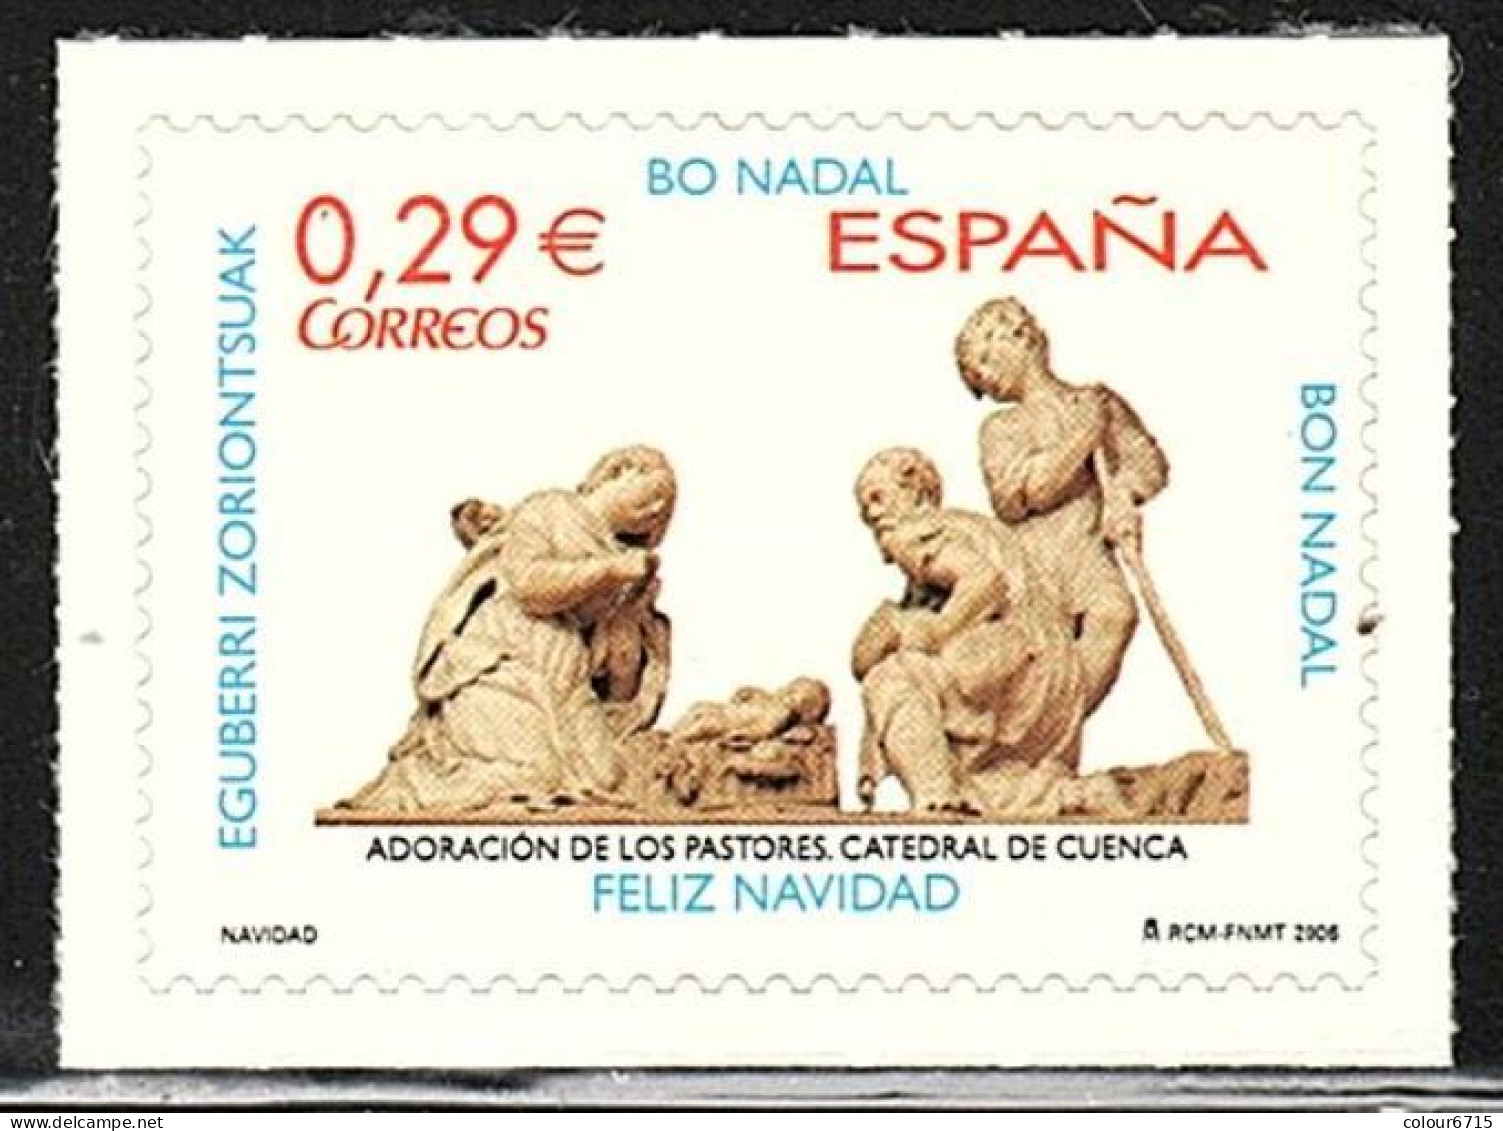 Spain 2006 Navidad Christmas Adoracion De Los Pastores Catedral De Cuenca Stamp 1v MNH - Unused Stamps